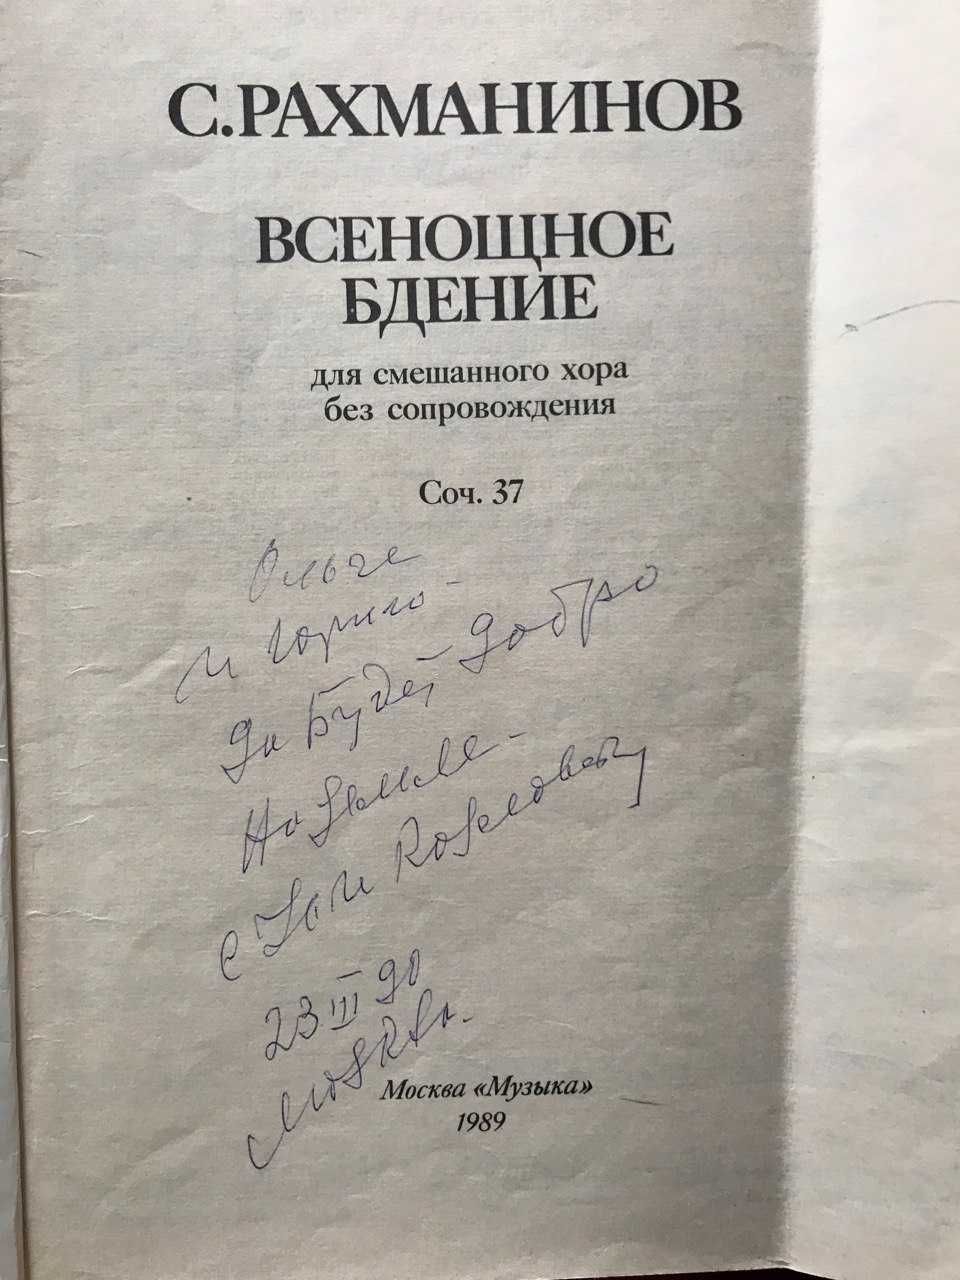 НОты Рахманинова  с автографами артистов большого театра